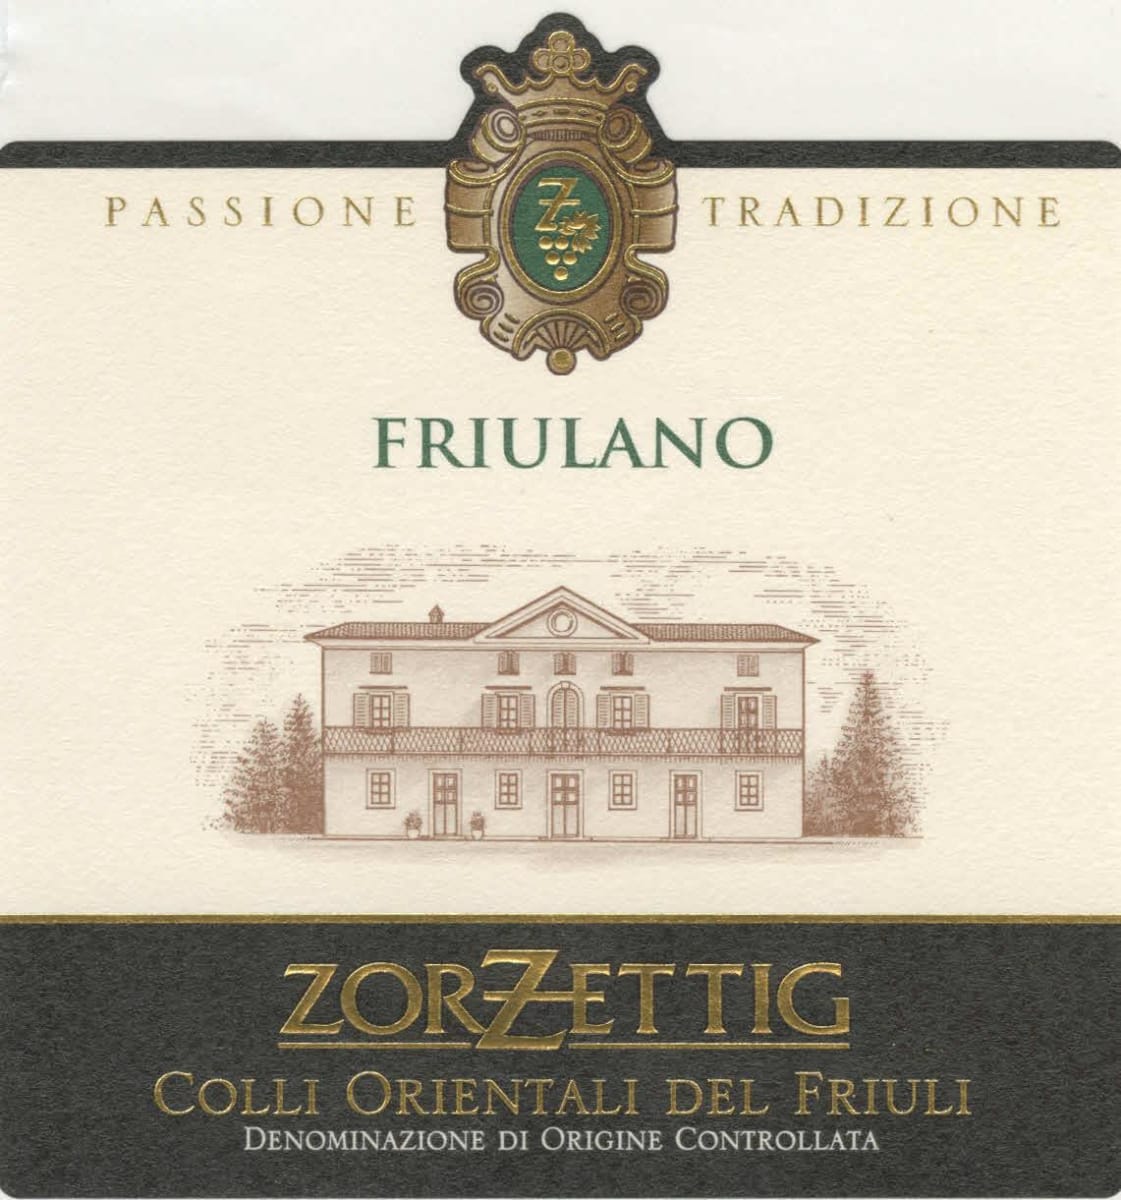 Zorzettig Colli Orientali del Friuli Friulano 2007 Front Label